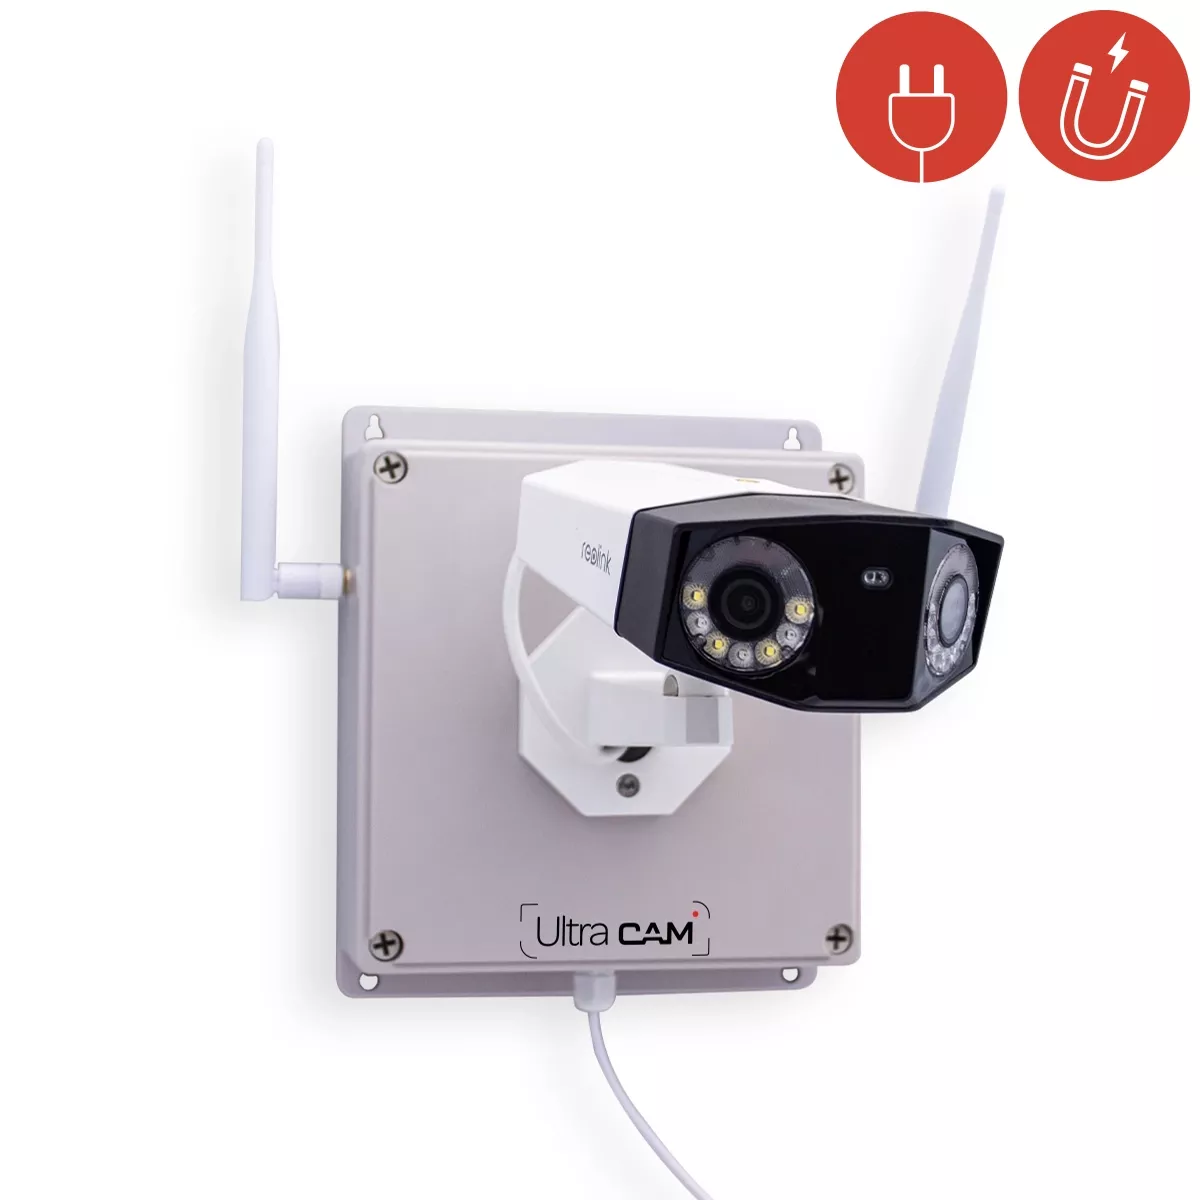 Micro caméra 4G UHD 2KP longue autonomie avec détection